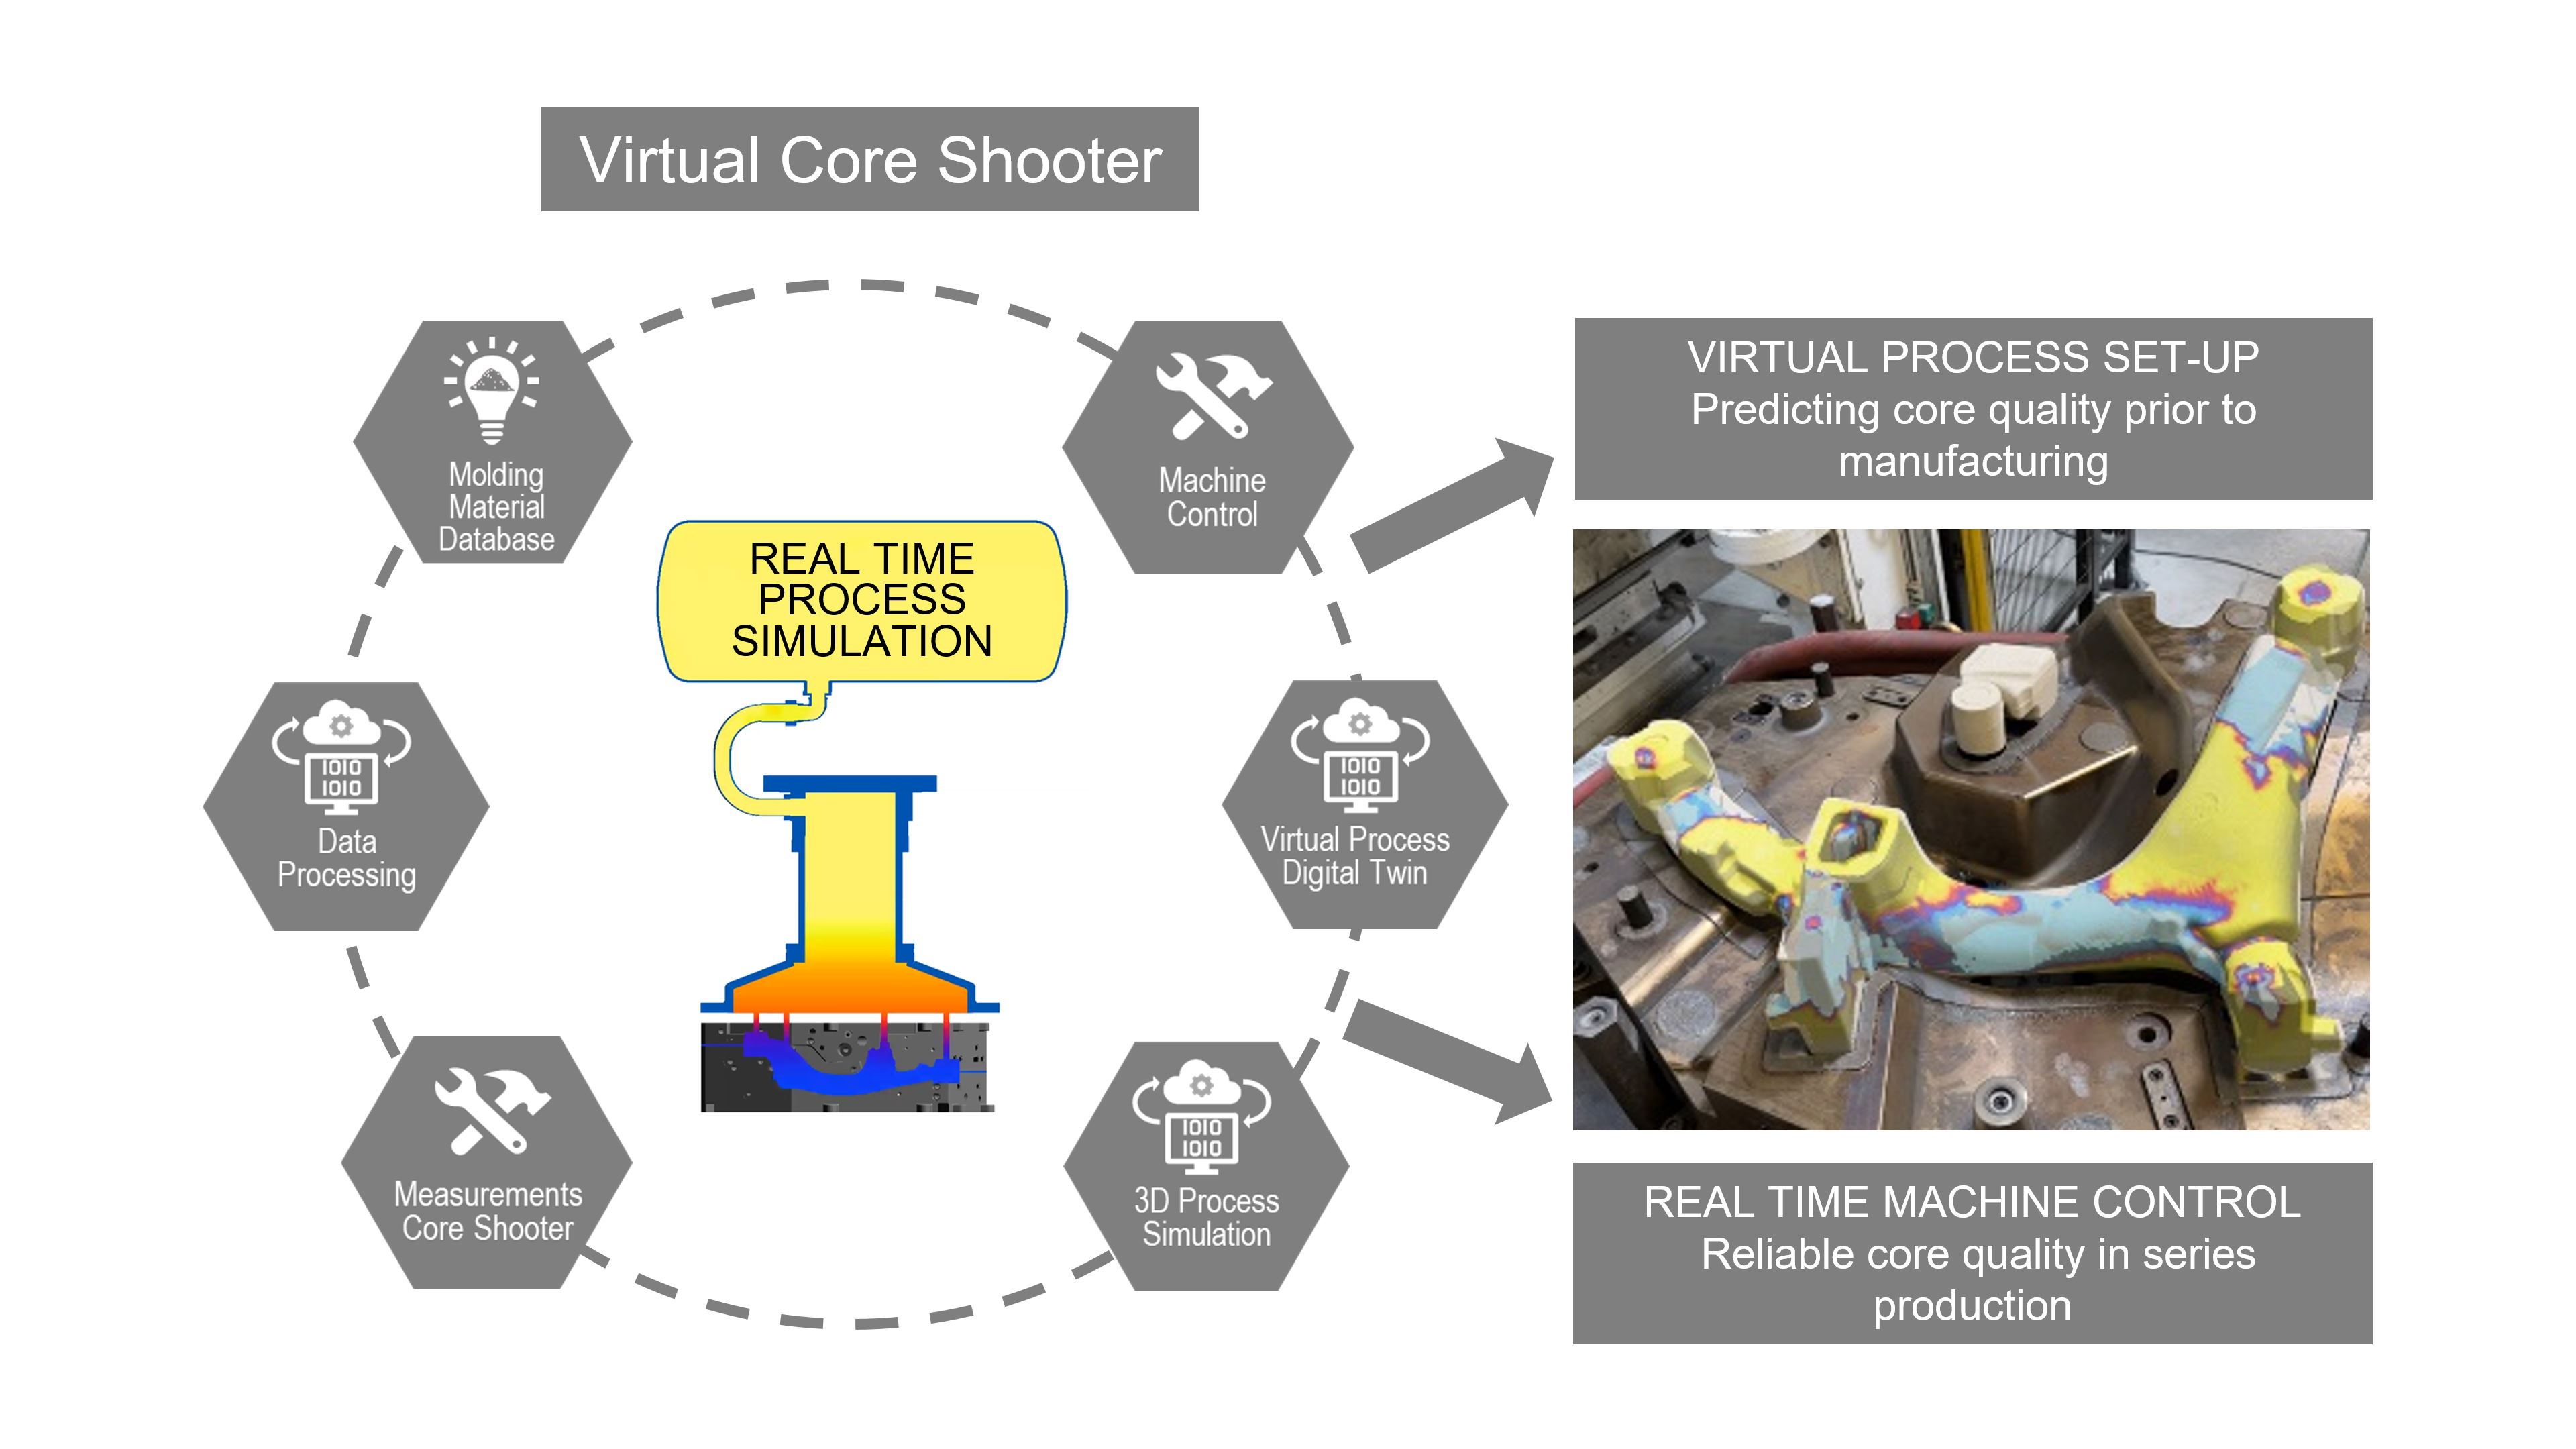 Das integrierte Konzept der virtuellen Kernschießmaschine verbindet das Know-how von drei marktführenden Unternehmen. 